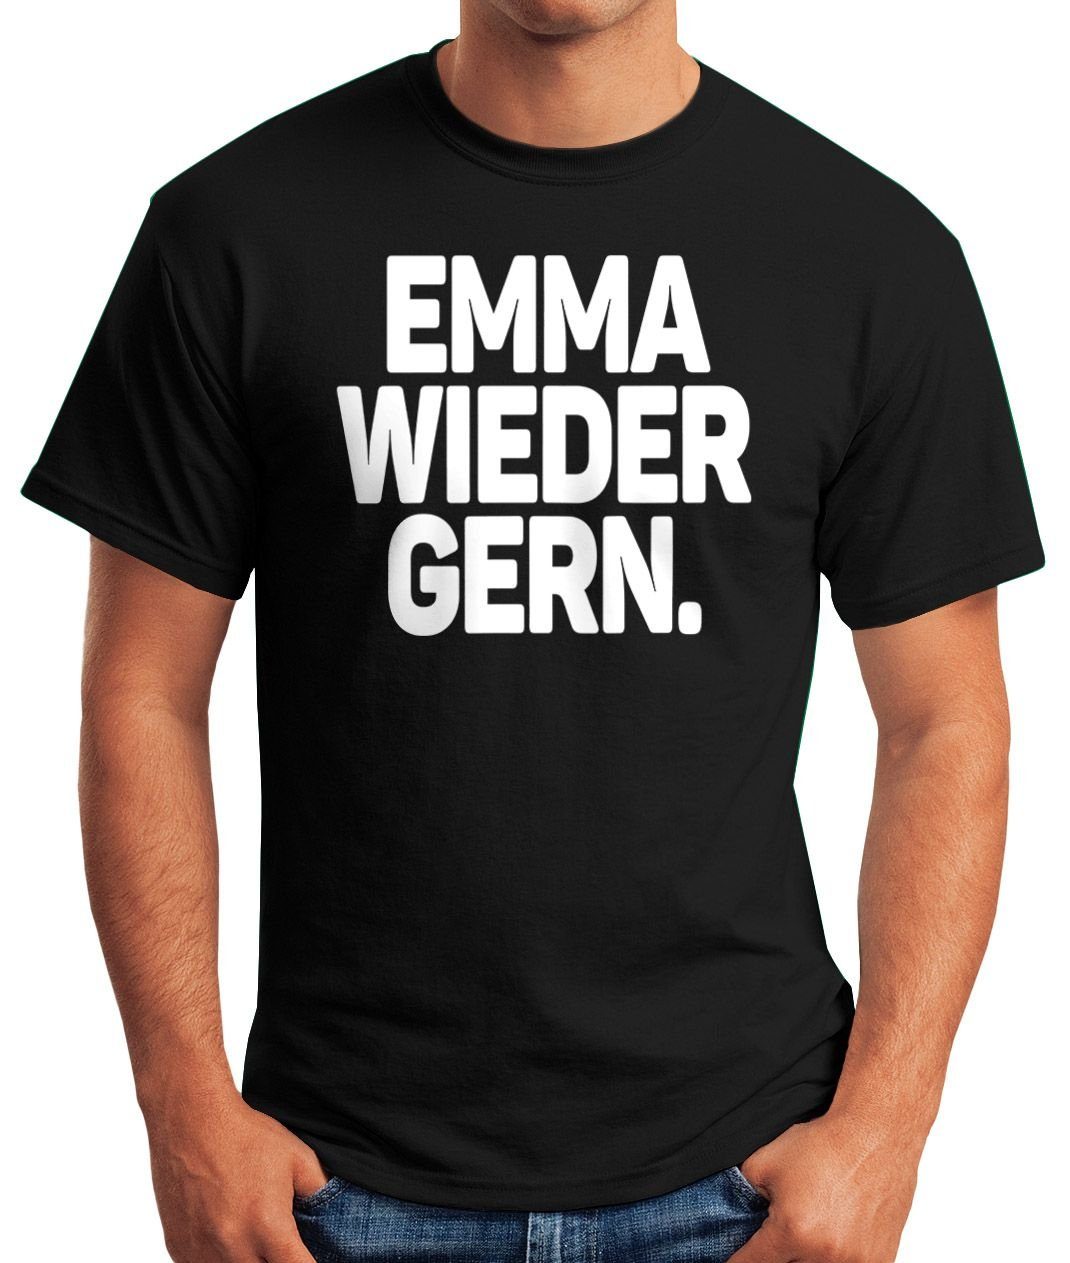 Print-Shirt Rave gern Oberteil Techno Herren Emma Fun-Shirt Print Spruch Party mit Moonworks® schwarz MoonWorks Festival wieder T-Shirt